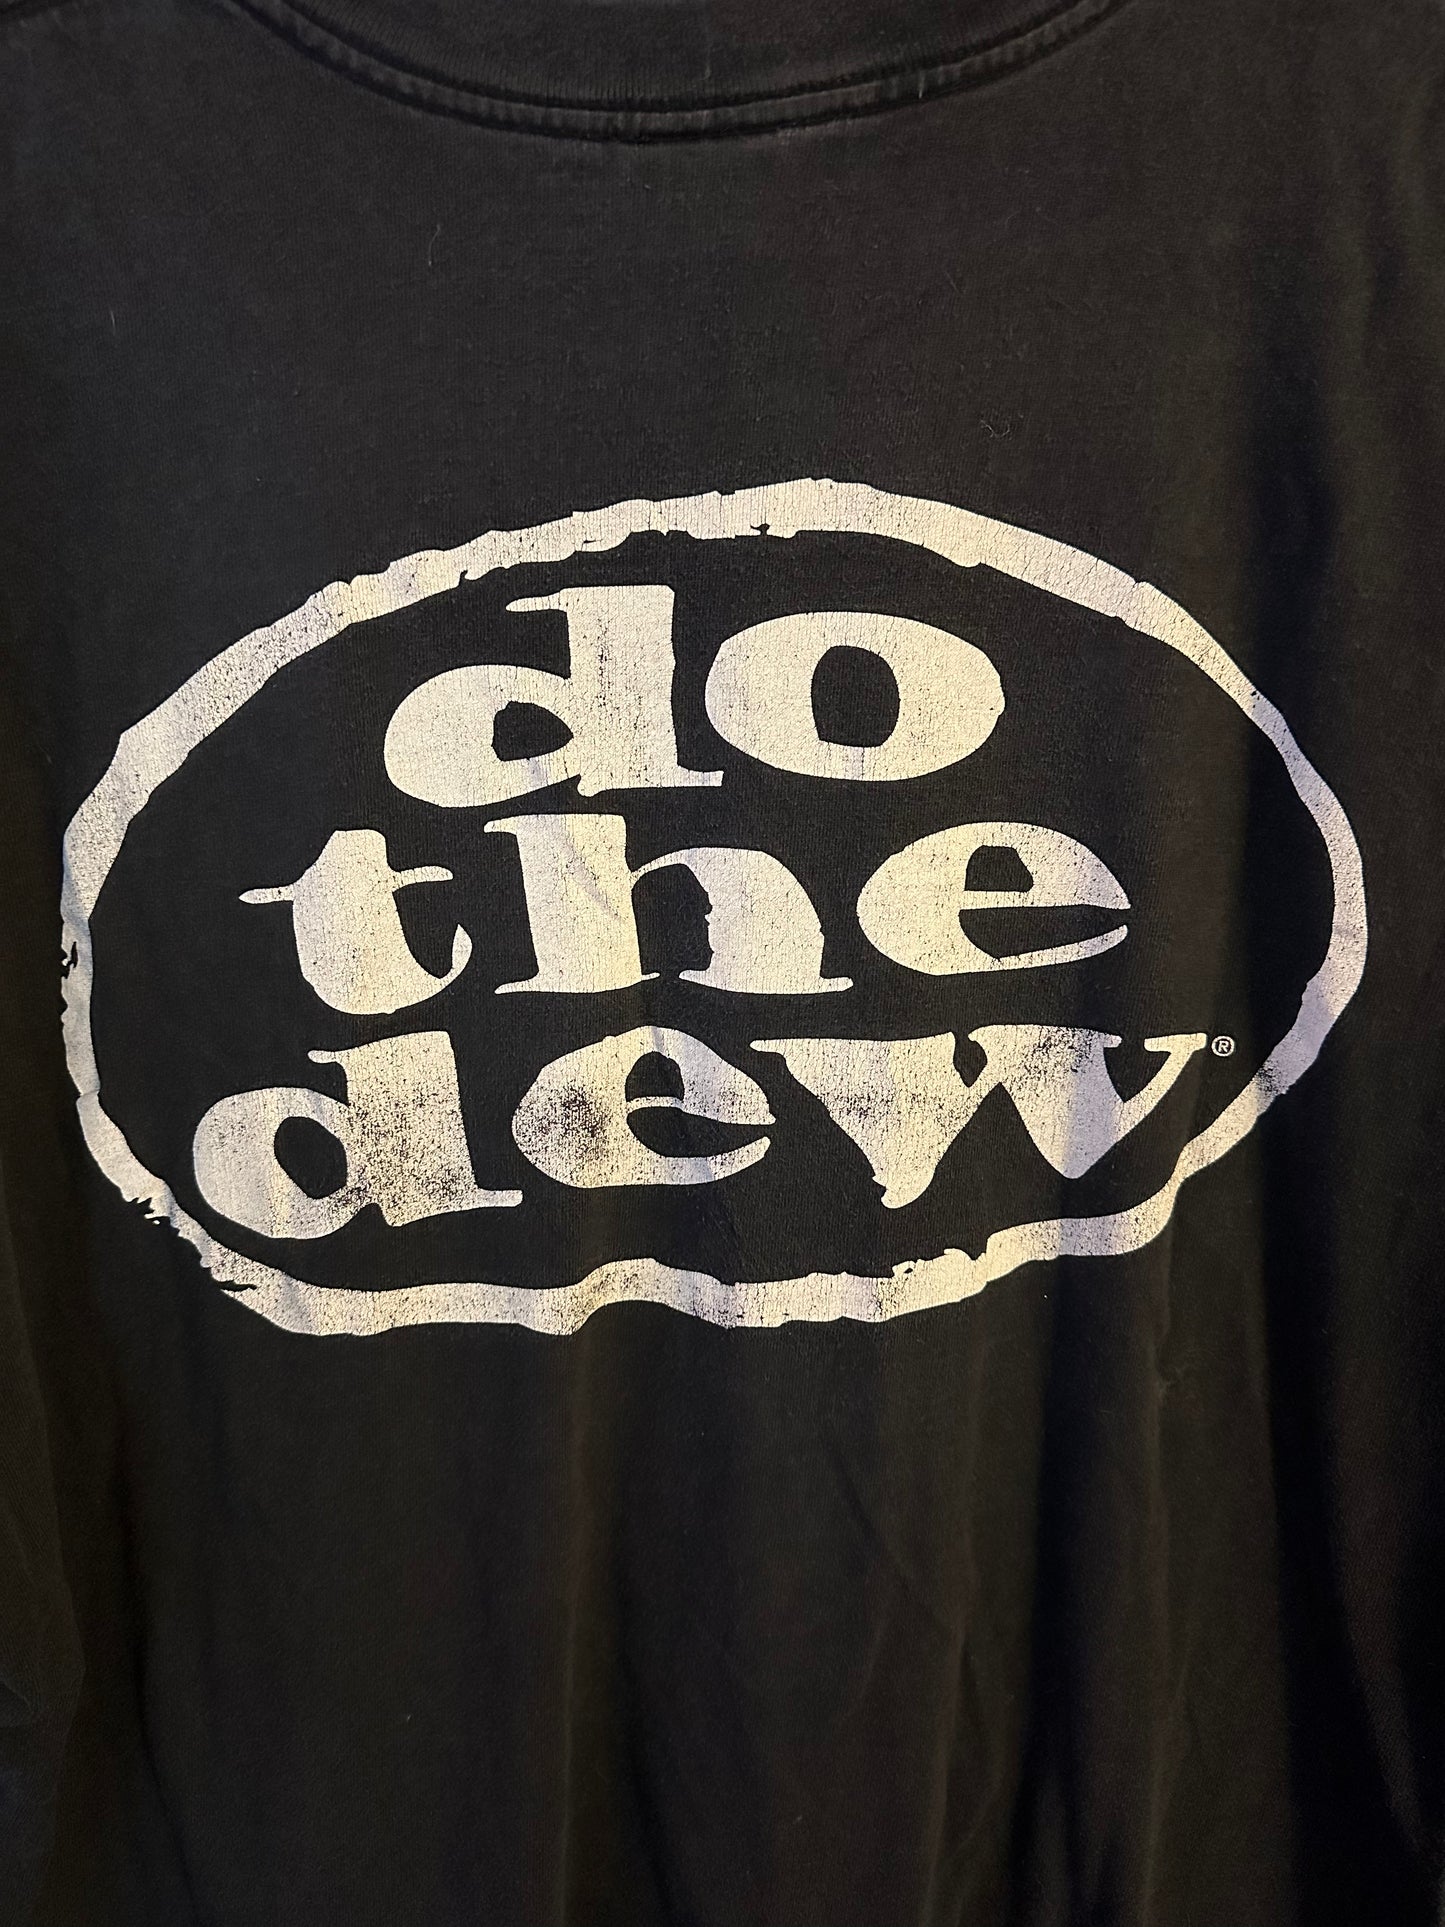 Mountain Dew T Shirt